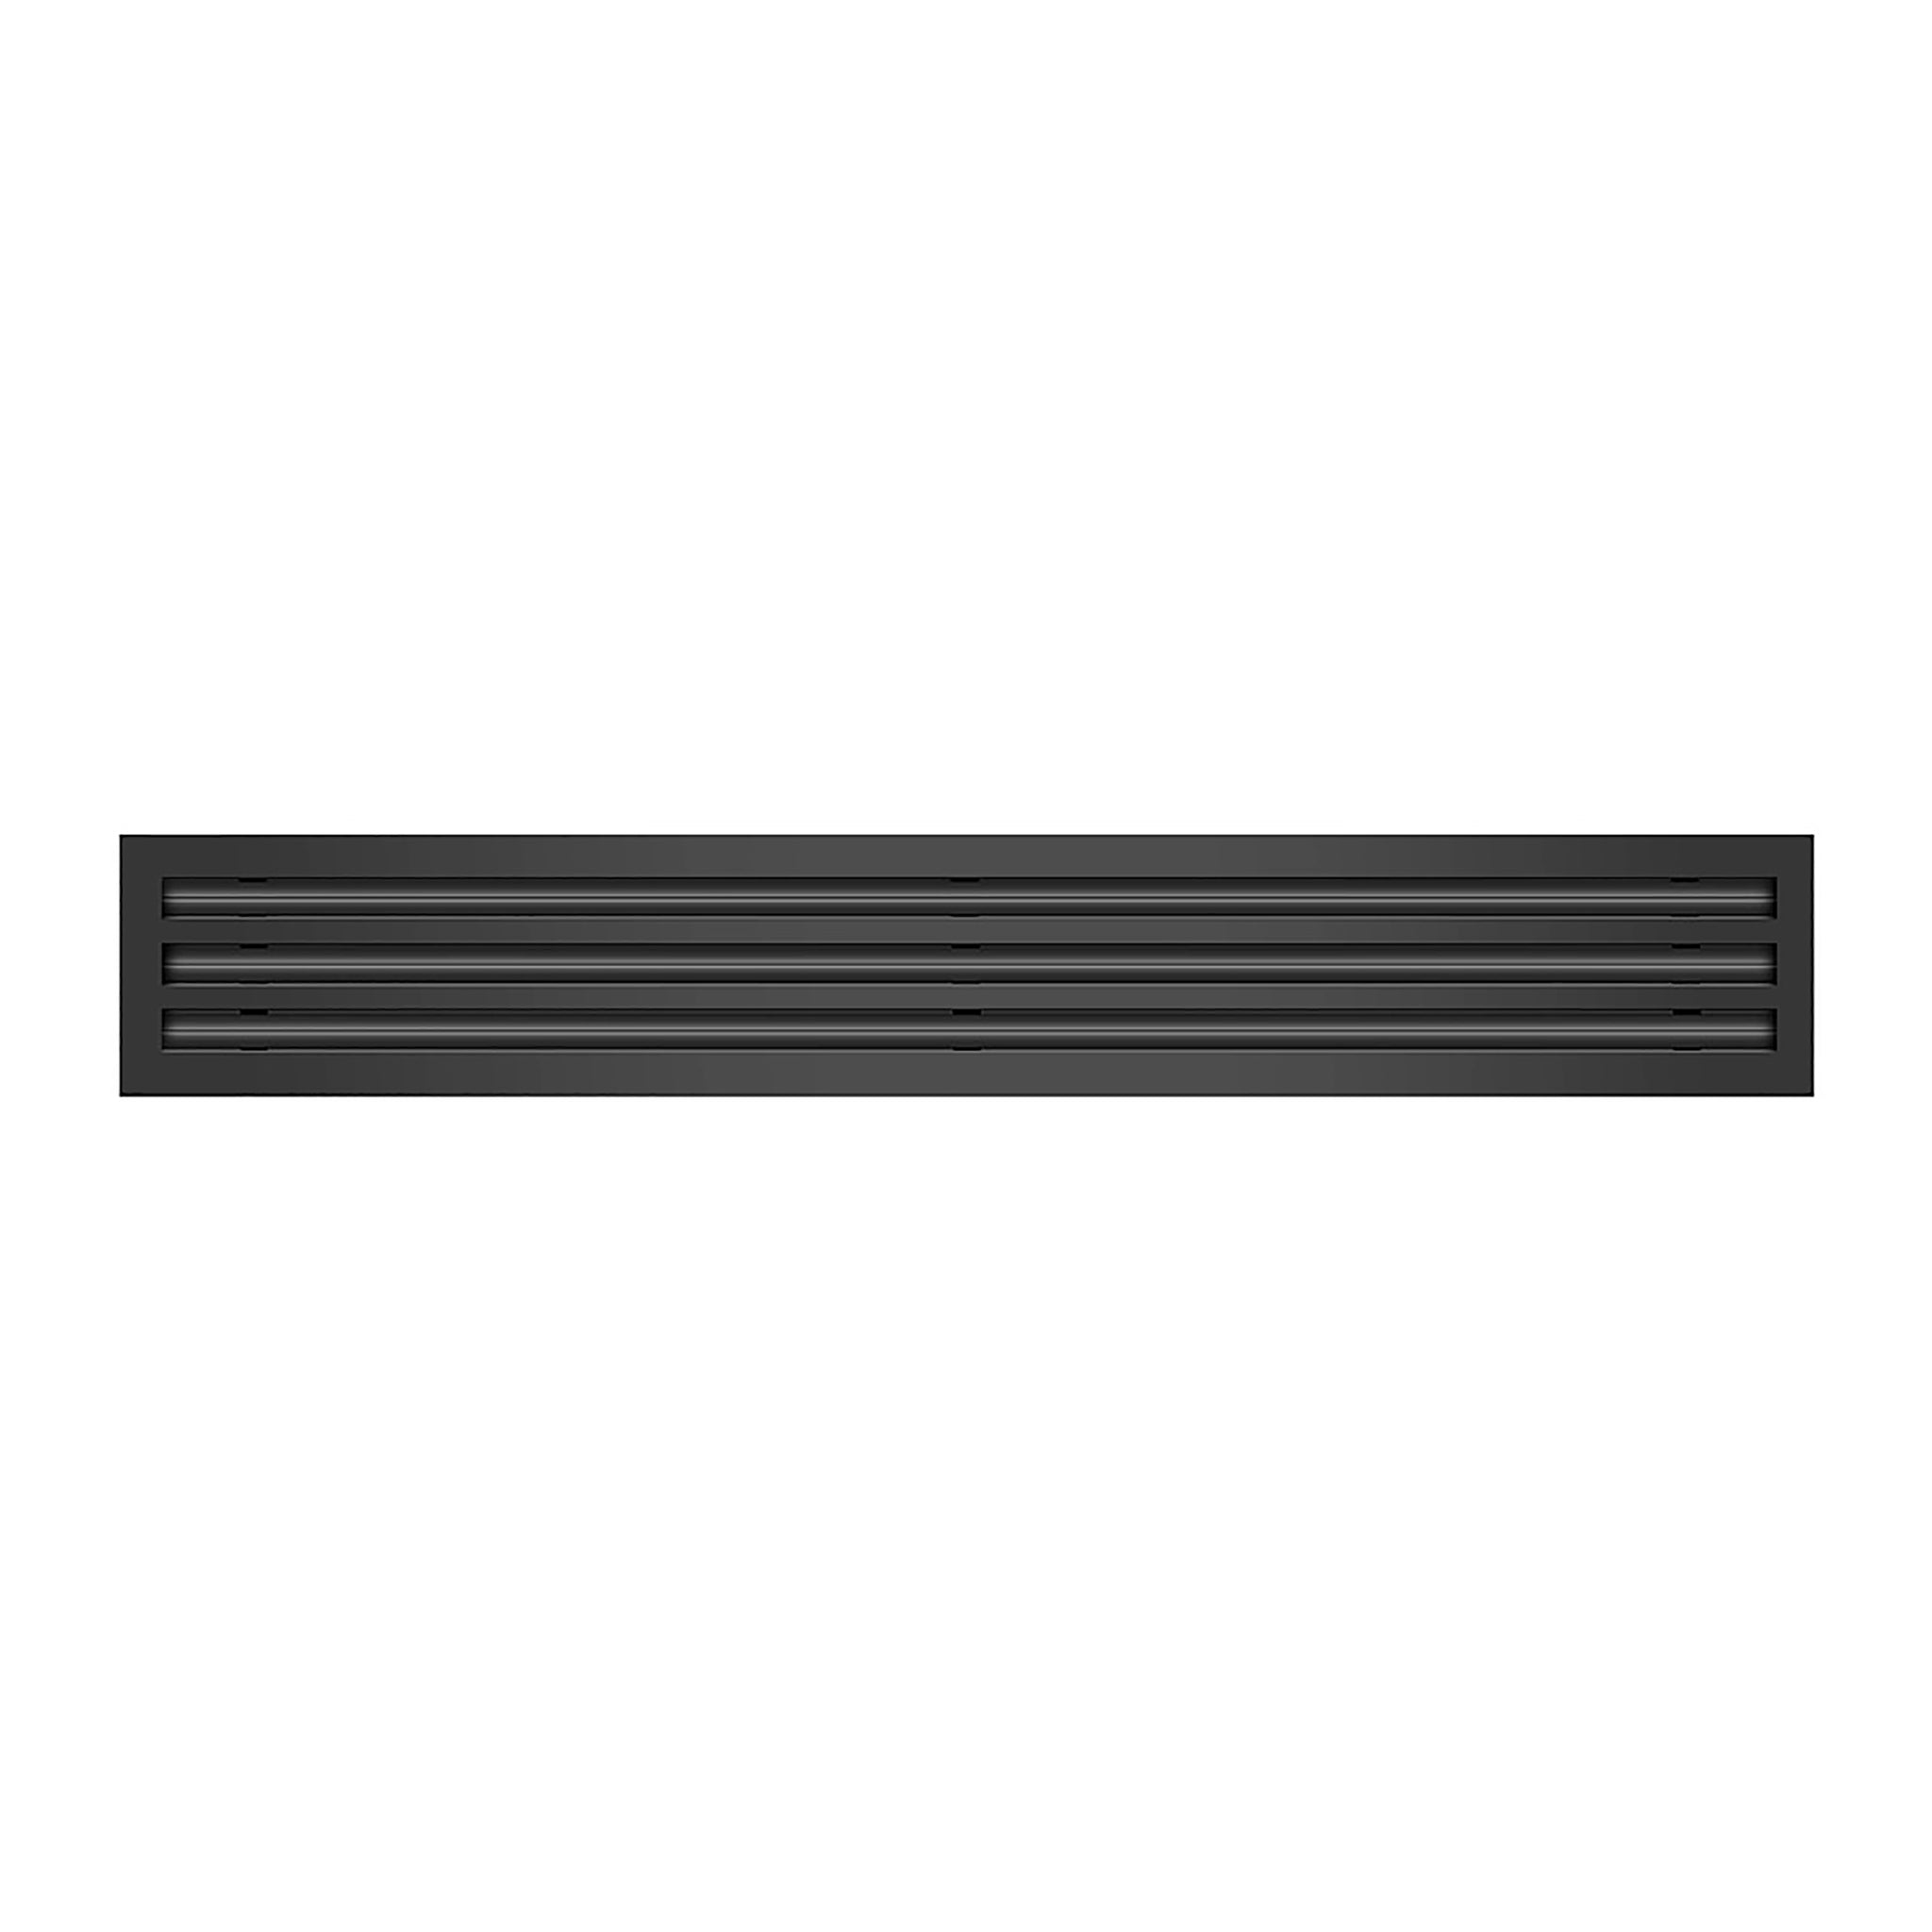 Frente de cubierta de ventilación de aire acondicionado lineal de 36 pulgadas y 3 ranuras de color negro - Difusor lineal blanco - Texas Buildmart